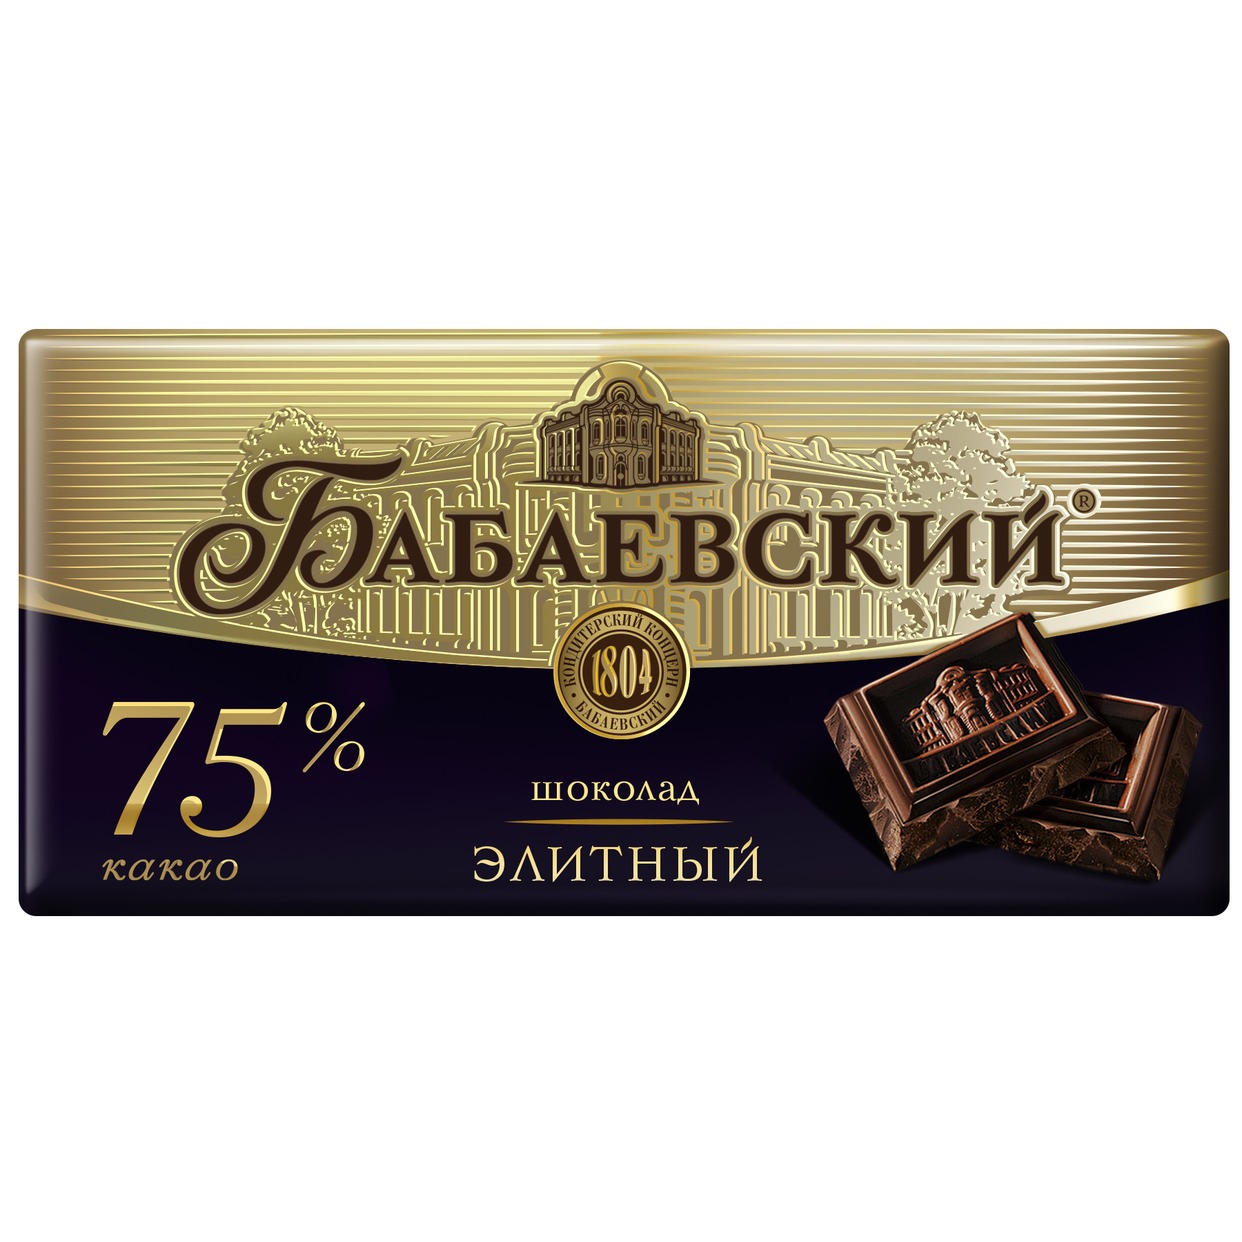 Шоколад Бабаевский, элитный, 75% какао, 200 г по акции в Пятерочке